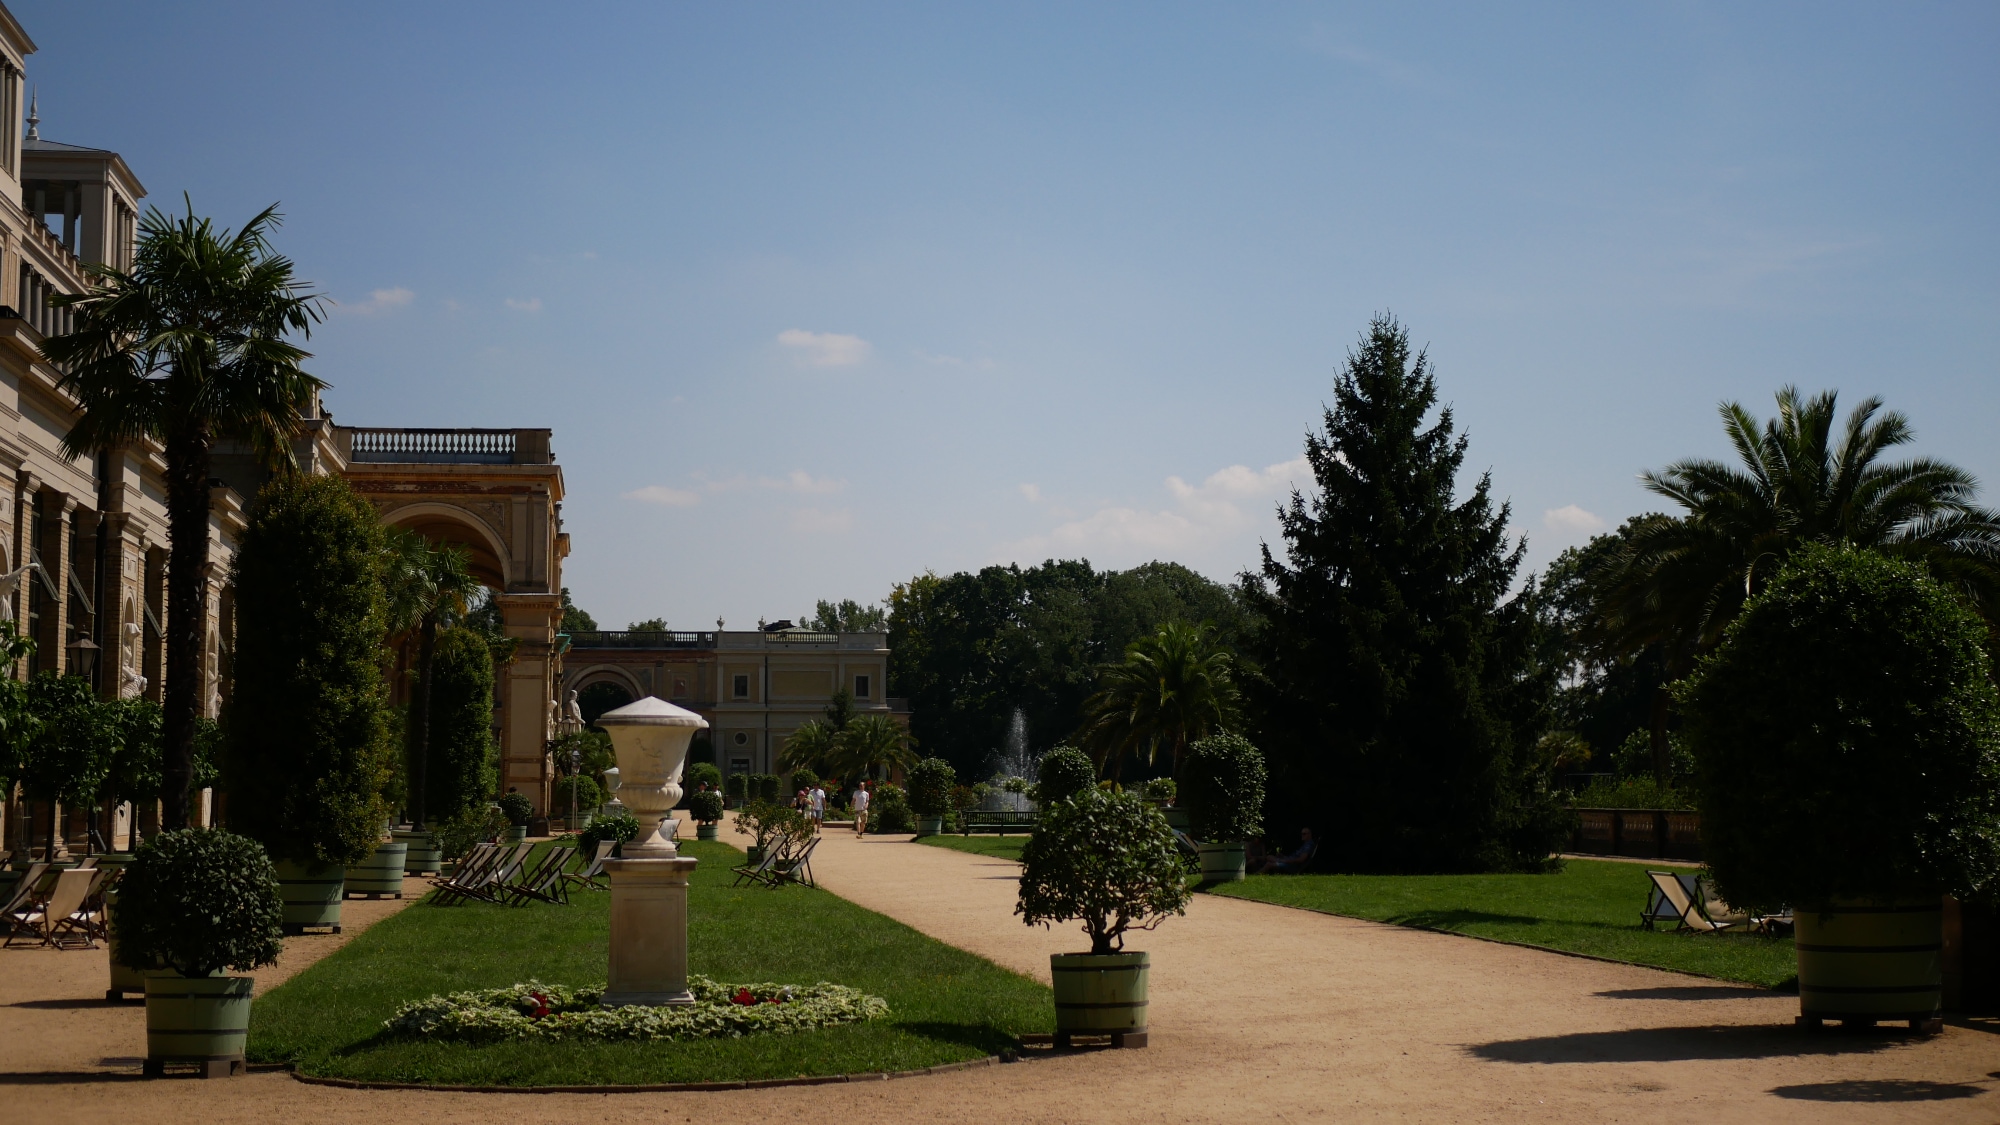 A photo taken at Sanssouci Park in Potsdam.